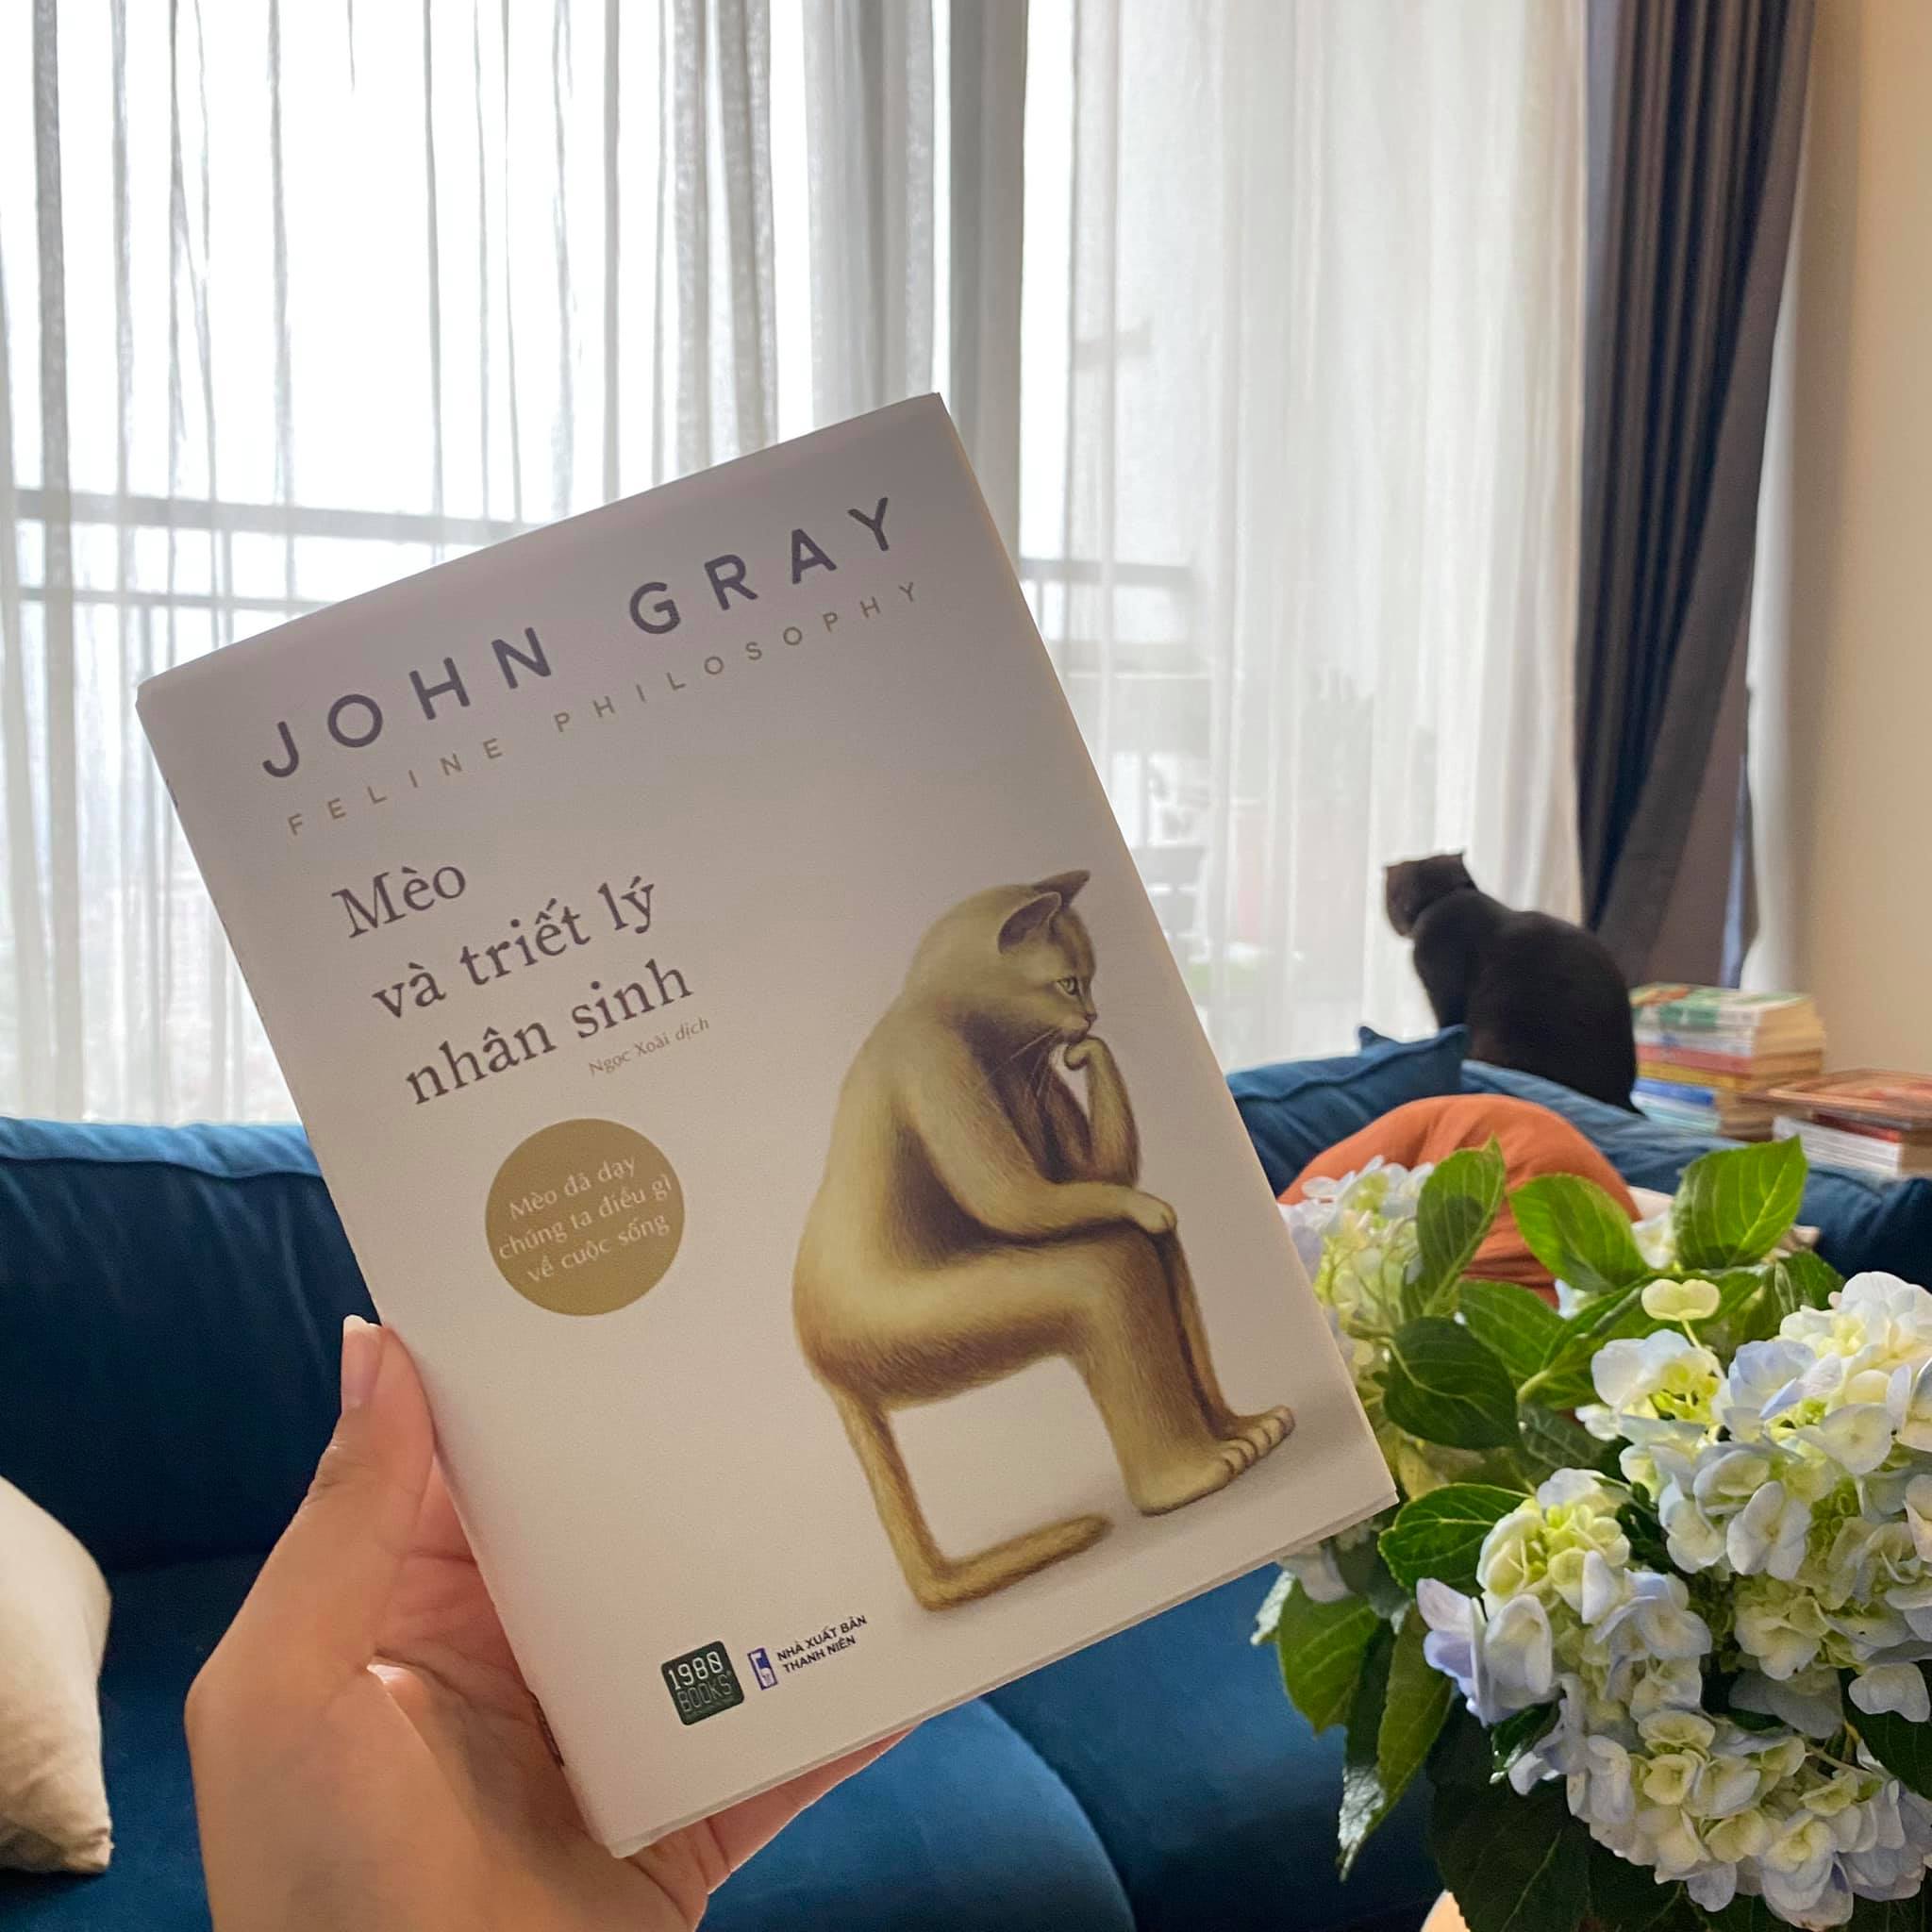 Mèo và triết lý nhân sinh - John Gray